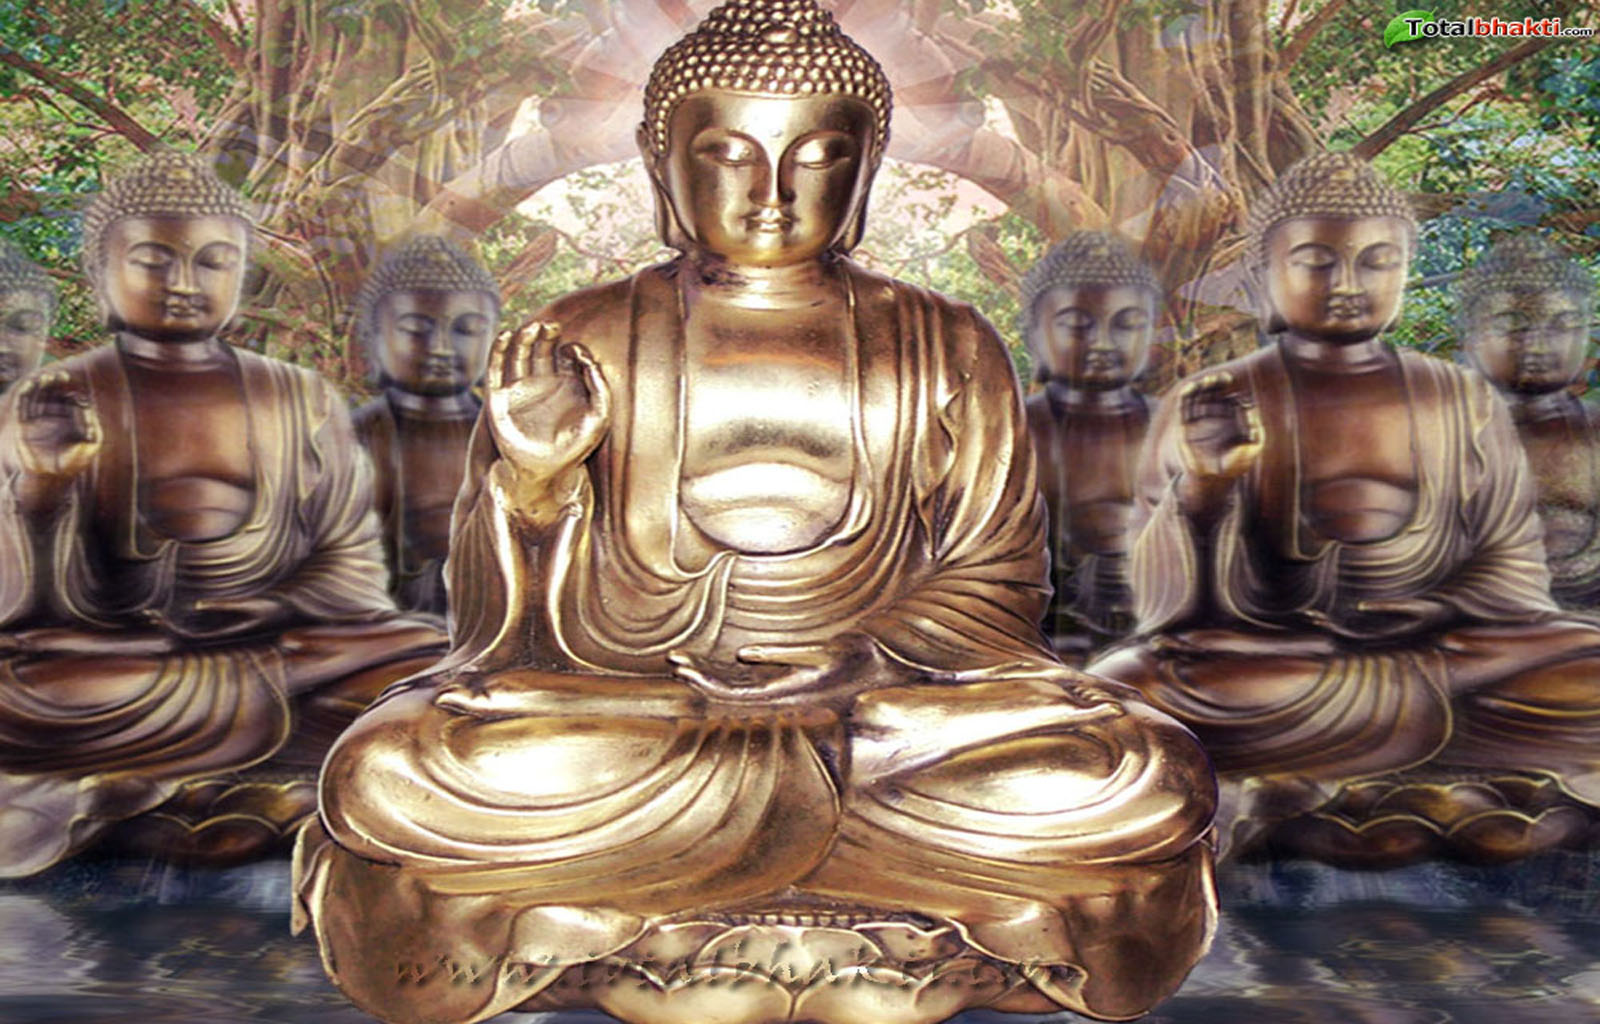 Buddhist dating site kostenlos